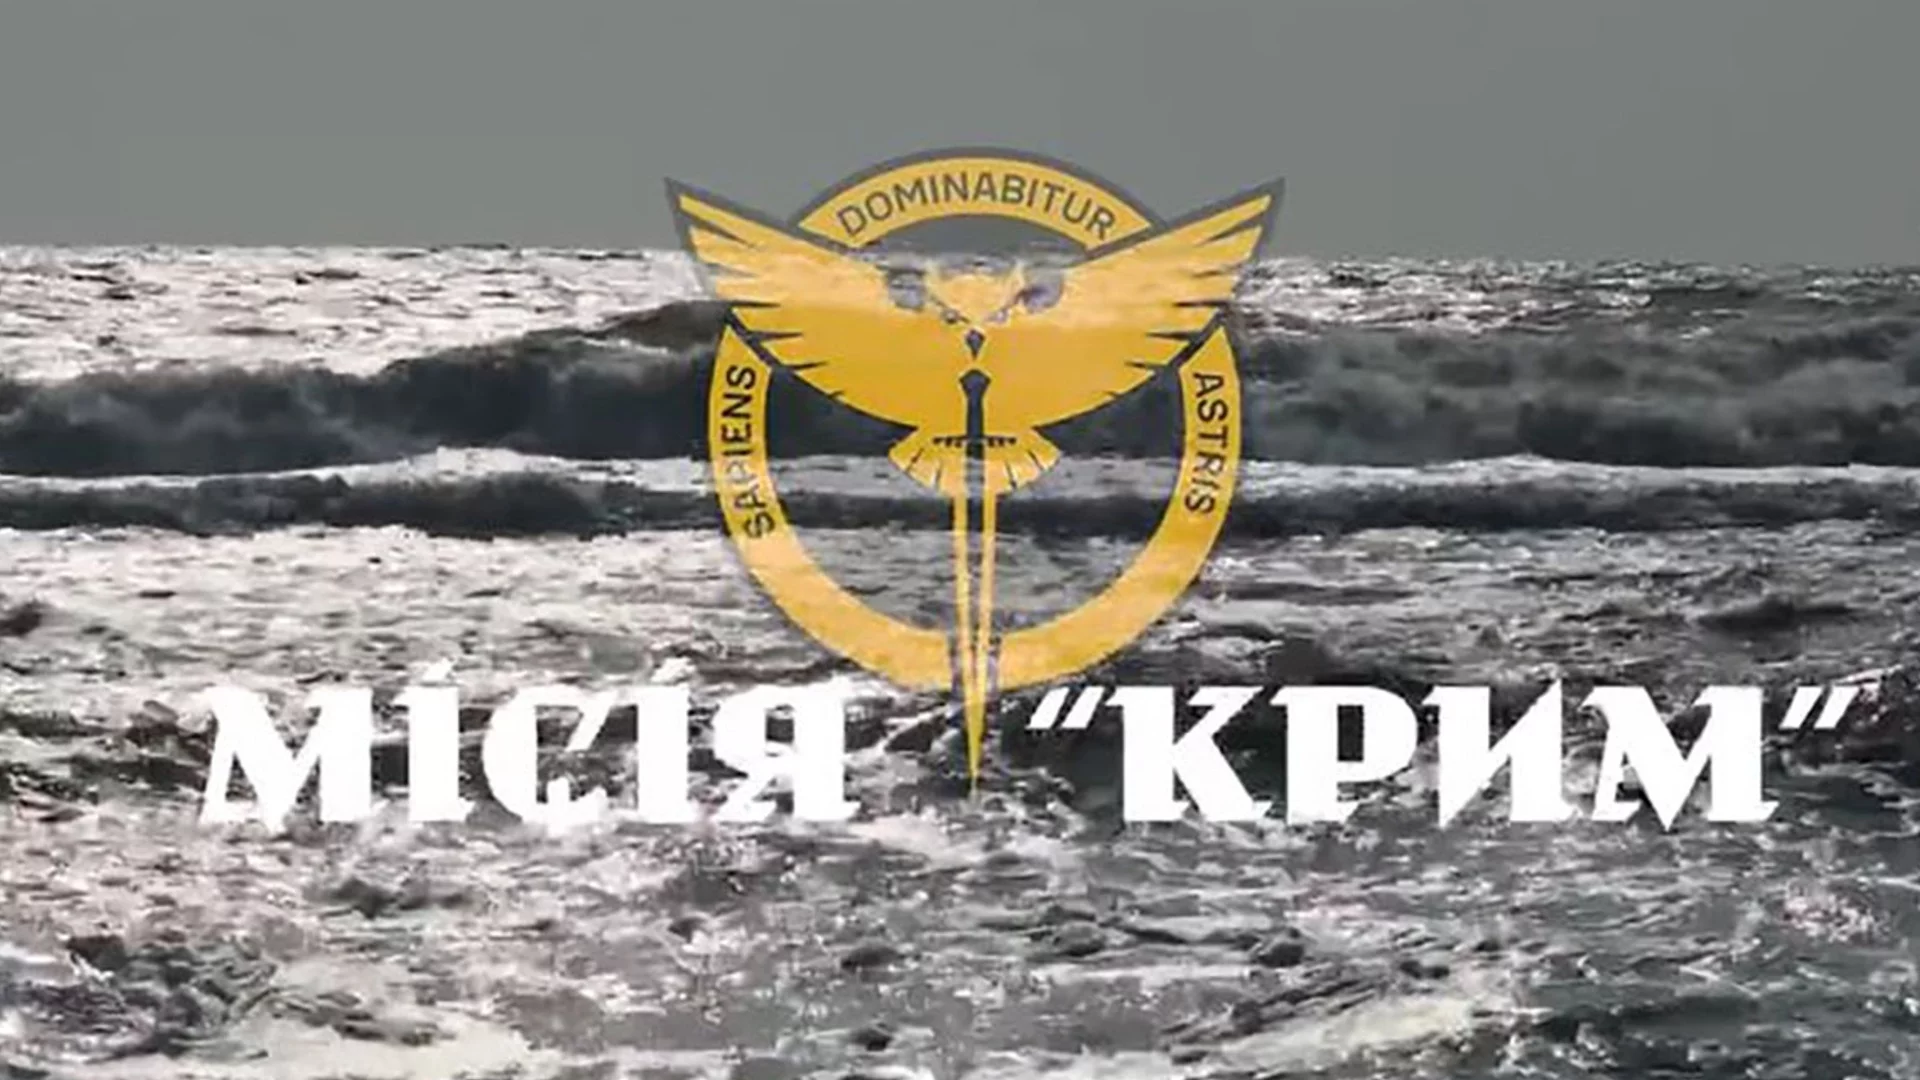 Атака с дронове по Крим: Украйна порази кораб и баржа (ВИДЕО)